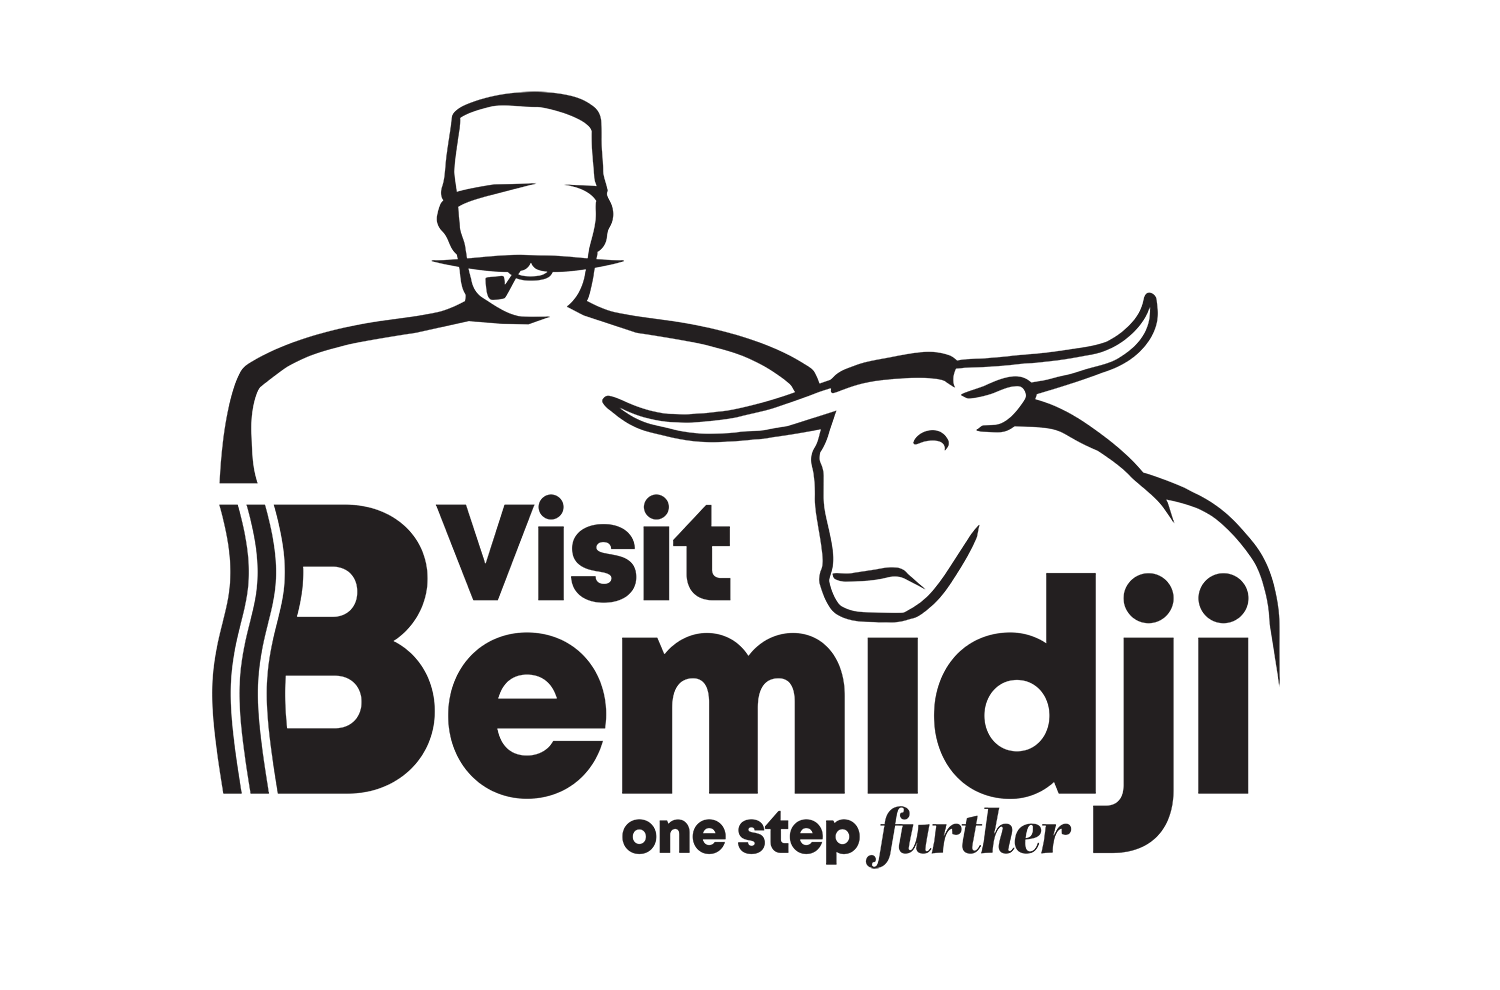 Visit Bemidji